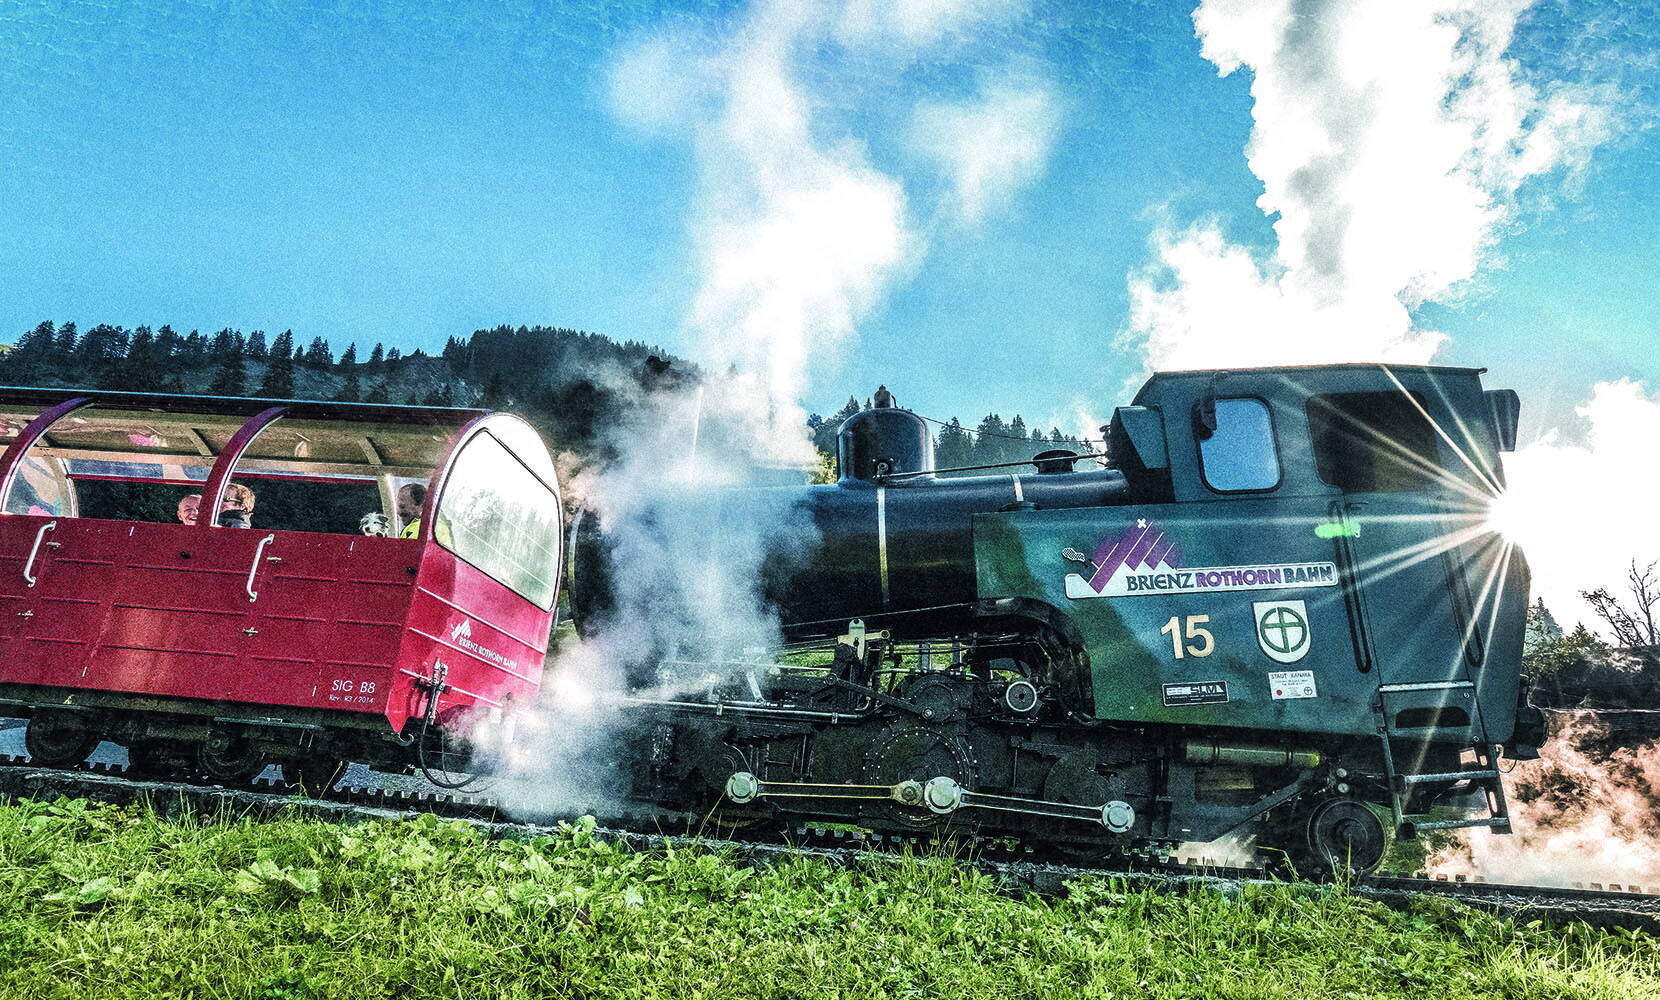 Excursion en famille au chemin de fer Brienz Rothorn. Le seul chemin de fer à vapeur à crémaillère avec des locomotives à vapeur de trois générations et un service quotidien à la vapeur pendant la saison estivale. Ils franchissent un dénivelé de 1'678 m et offrent une vue panoramique à couper le souffle.